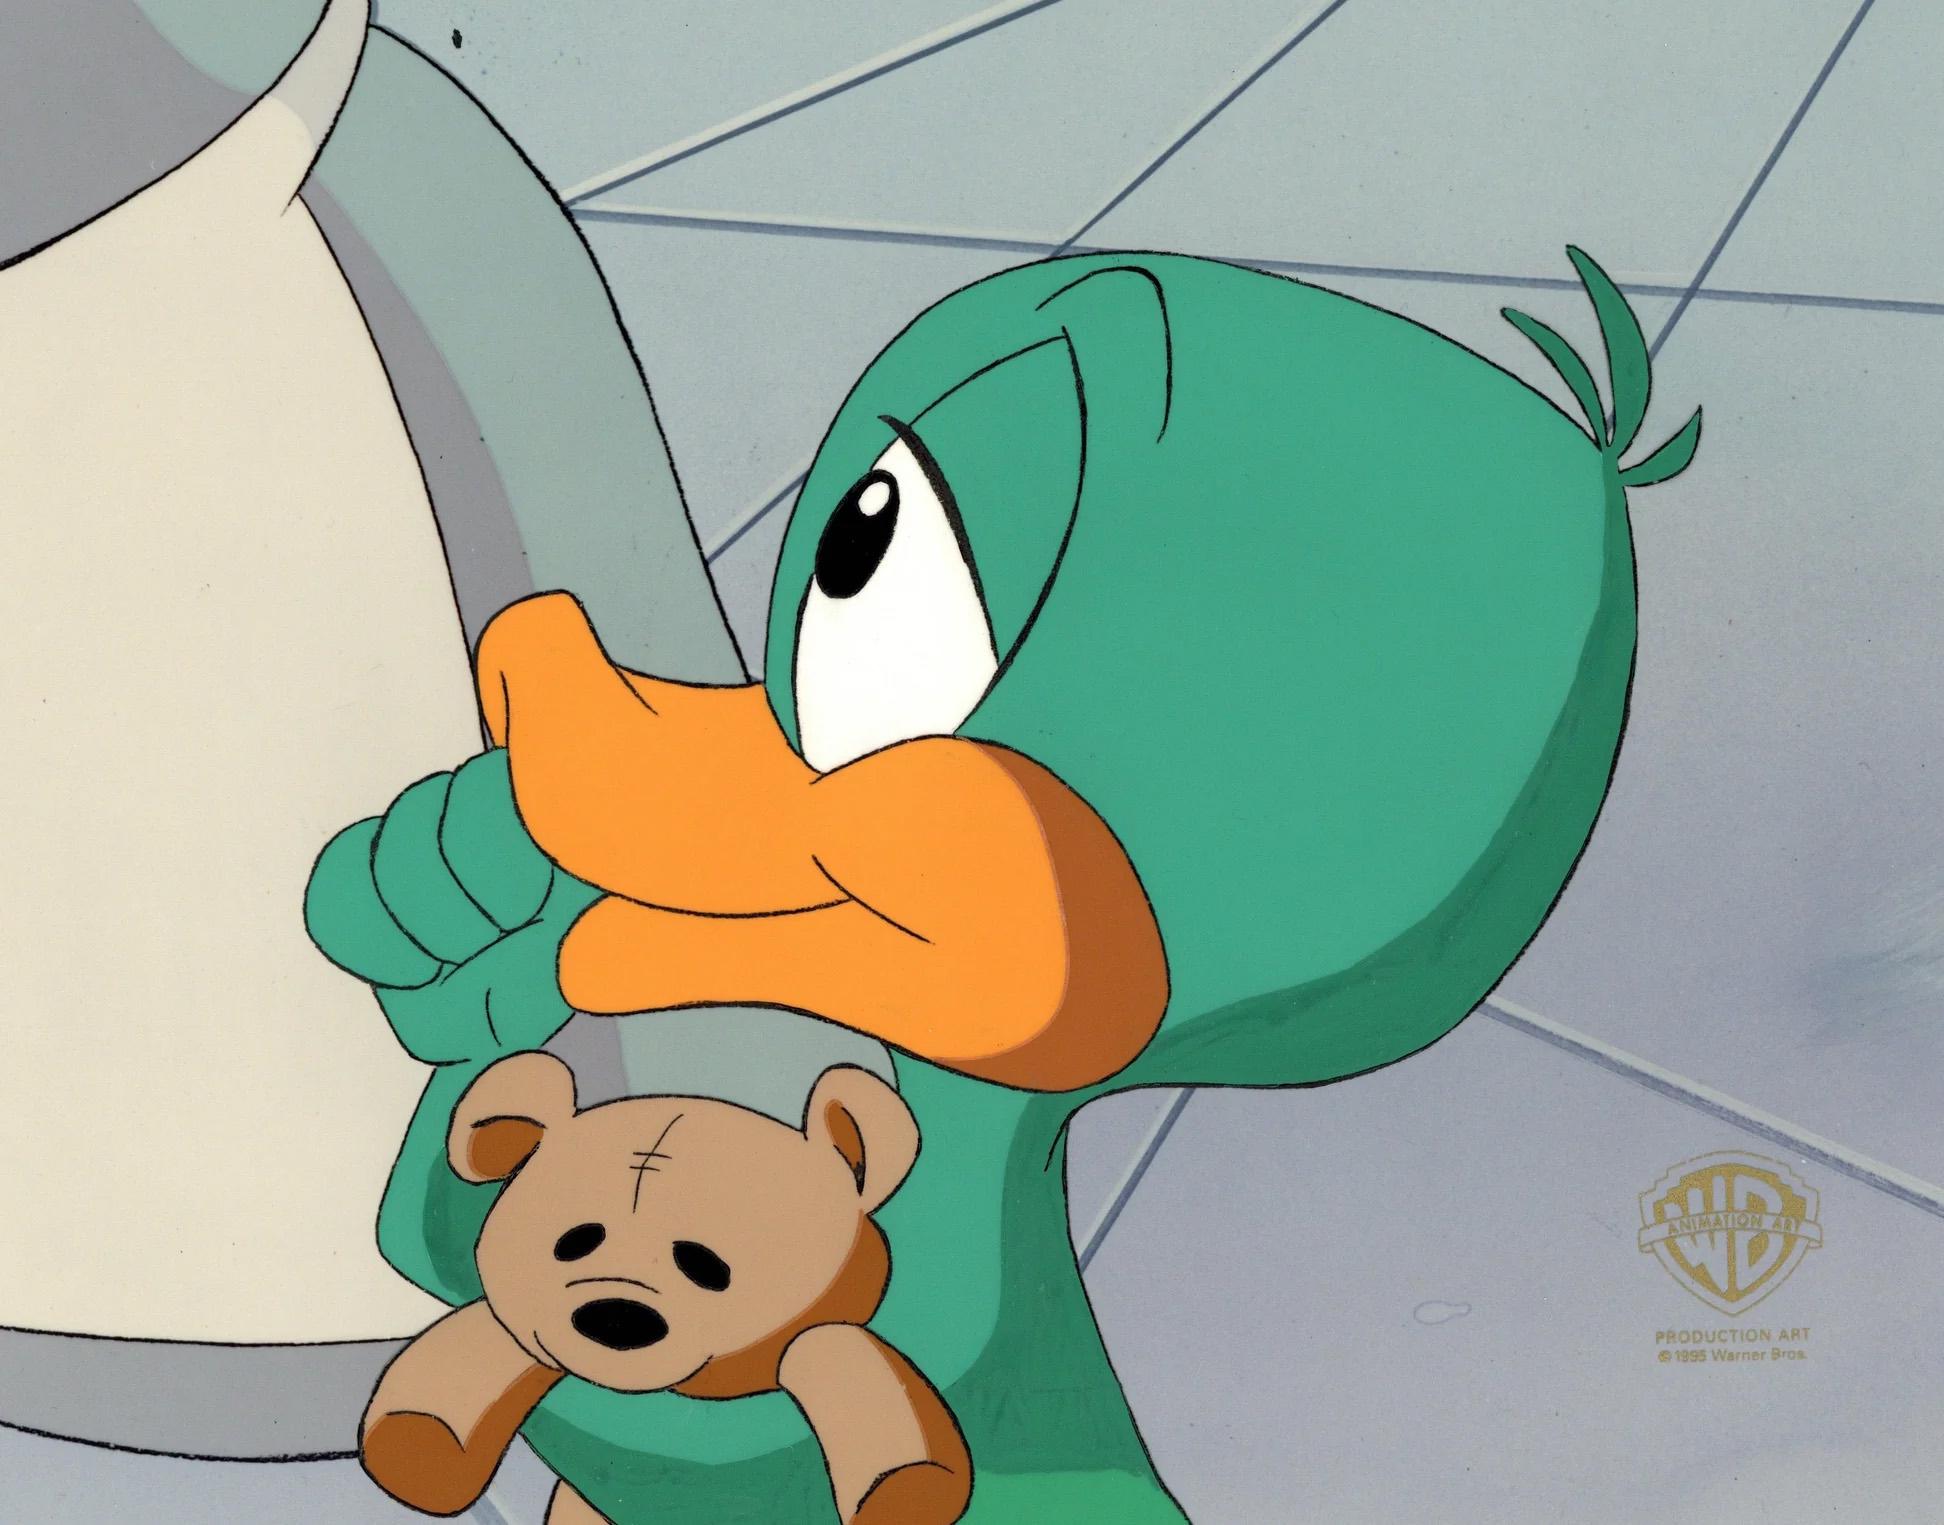 Tiny Toons Adventures Original Production Cel: Plucky Duck - Art by Warner Bros. Studio Artists